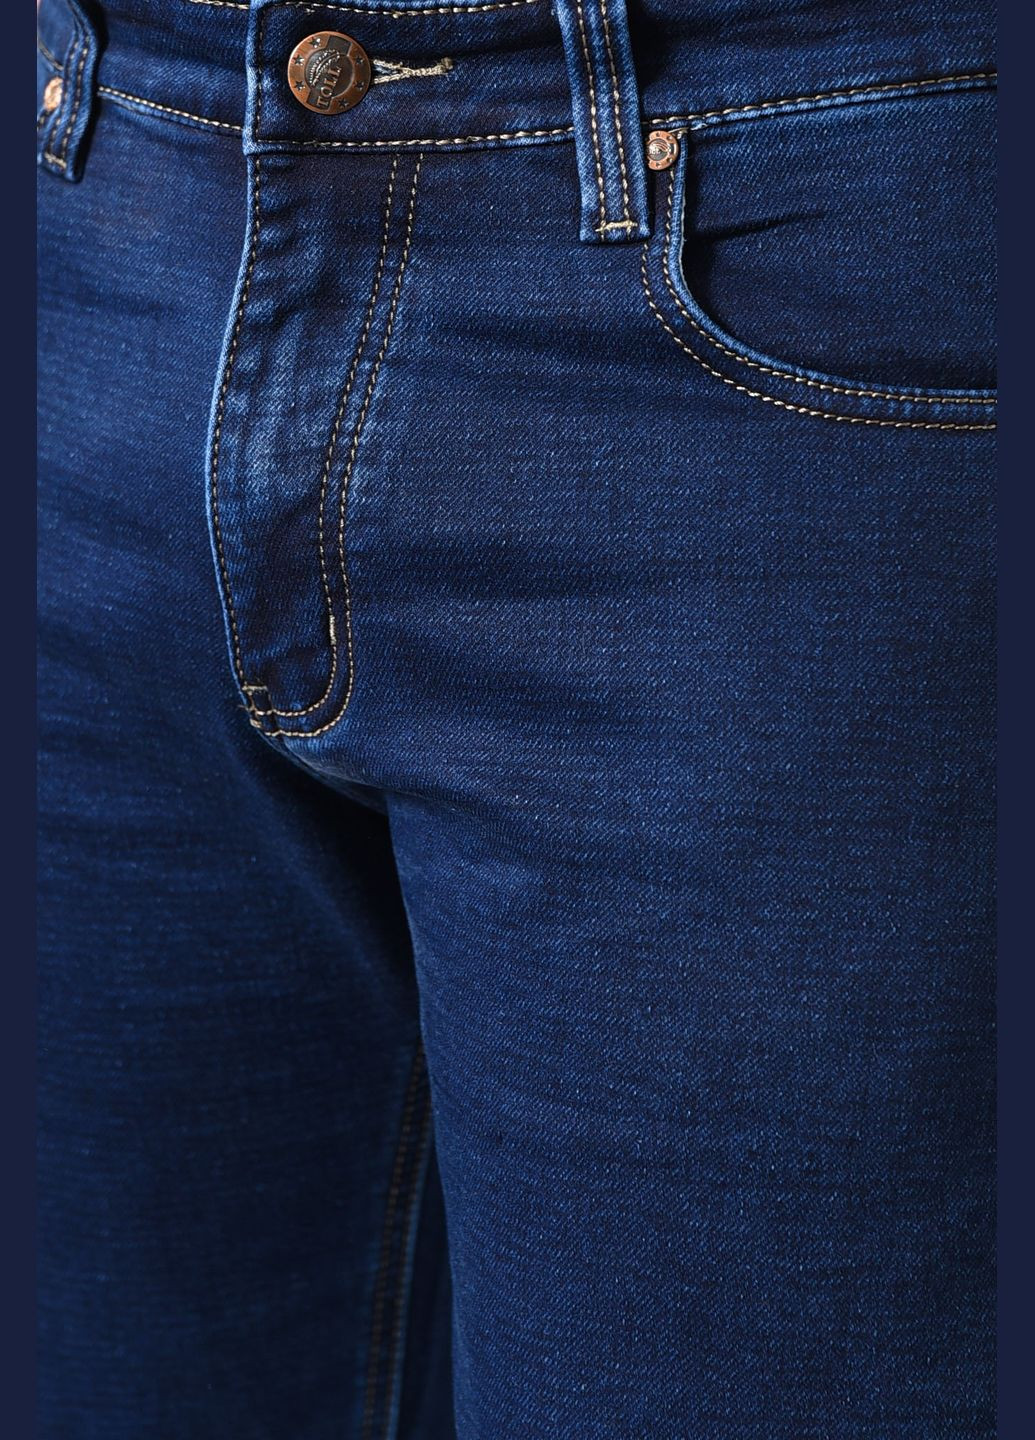 Синие демисезонные прямые джинсы мужские полубатальные синего цвета Let's Shop